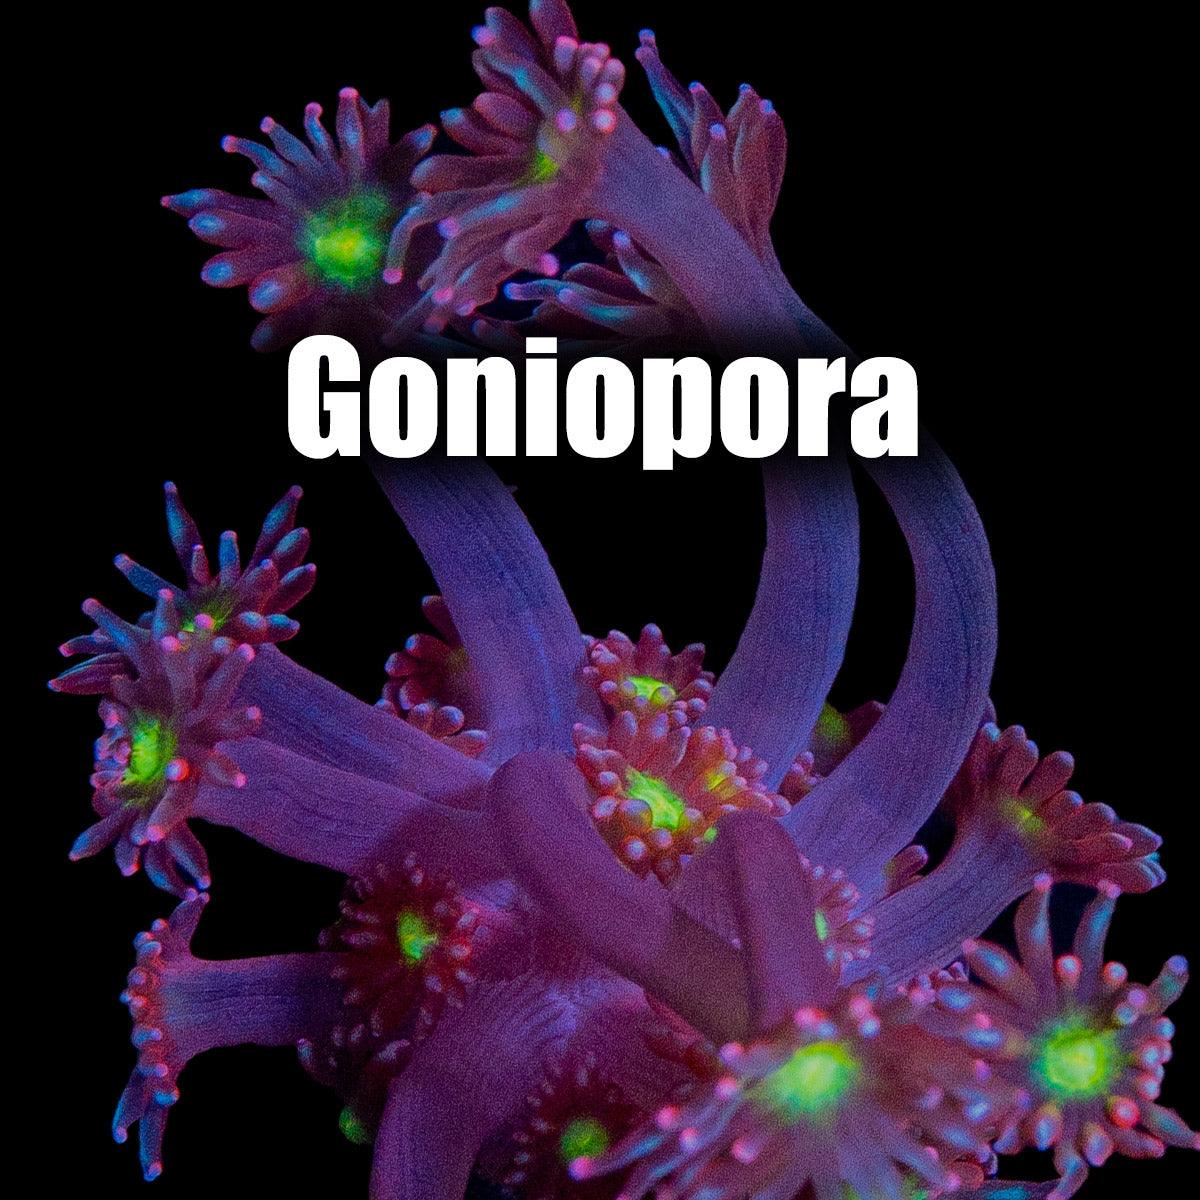 Goniopora - riptide aquaculture llc